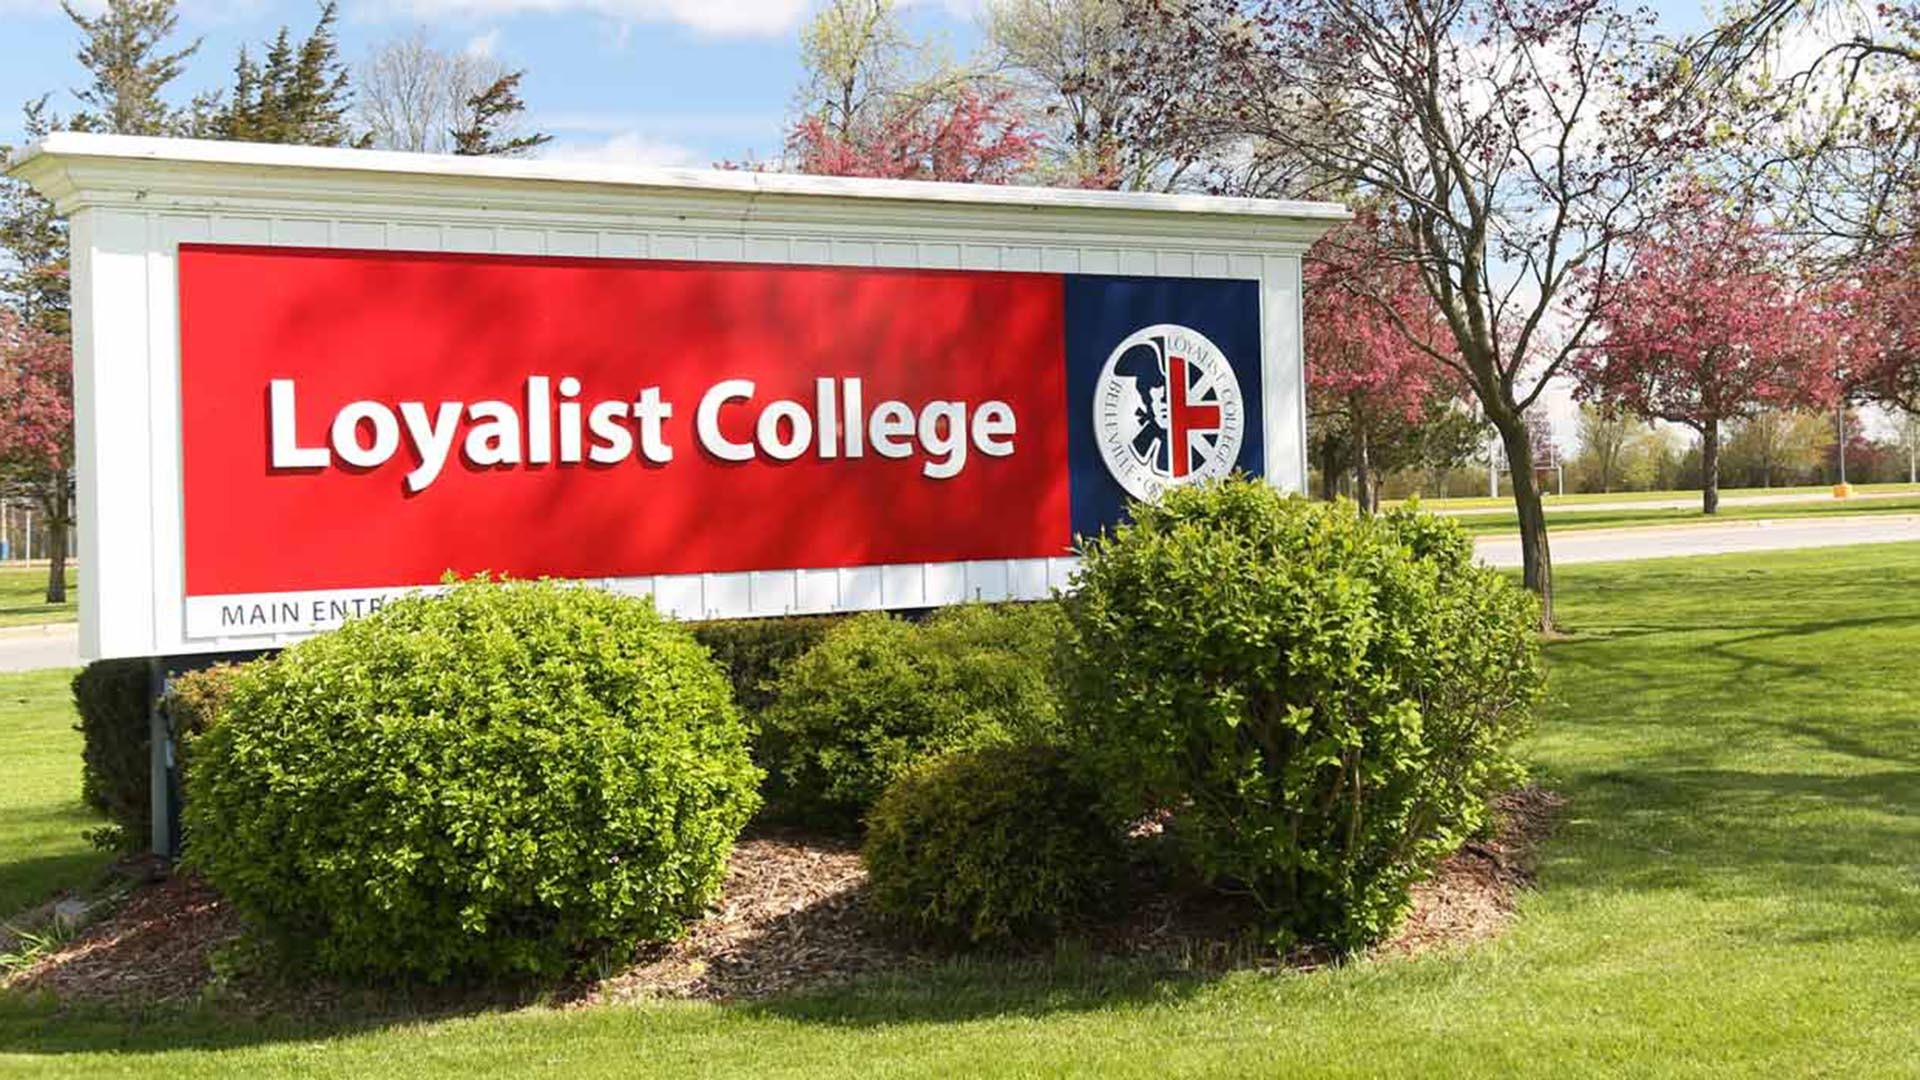 Loyalist College – Lựa chọn tuyệt vời cho du học cao đẳng Canada?